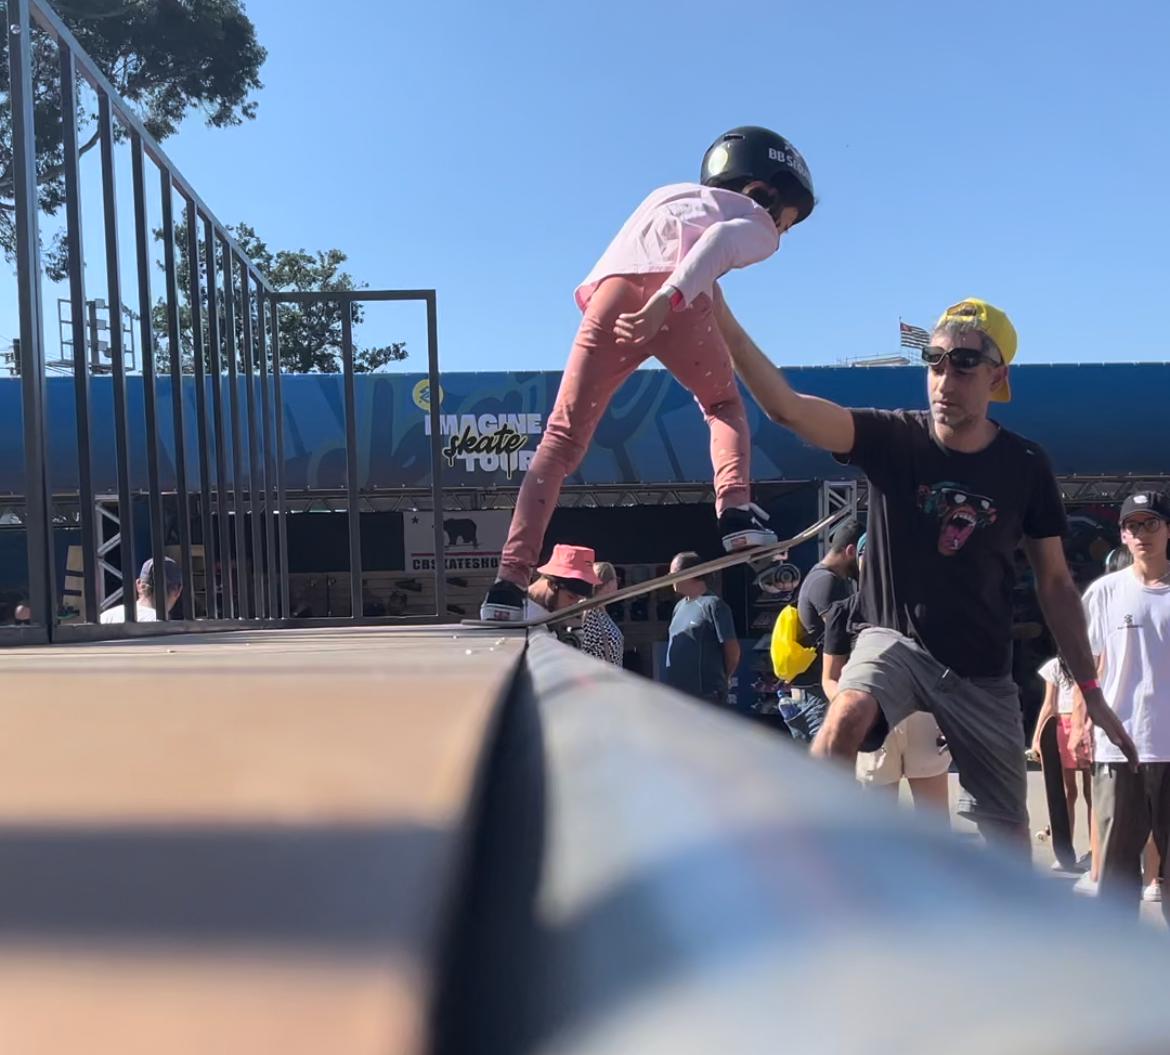 Na imagem, criança no mini half pipe, durante evento Imagine Skate Tour.